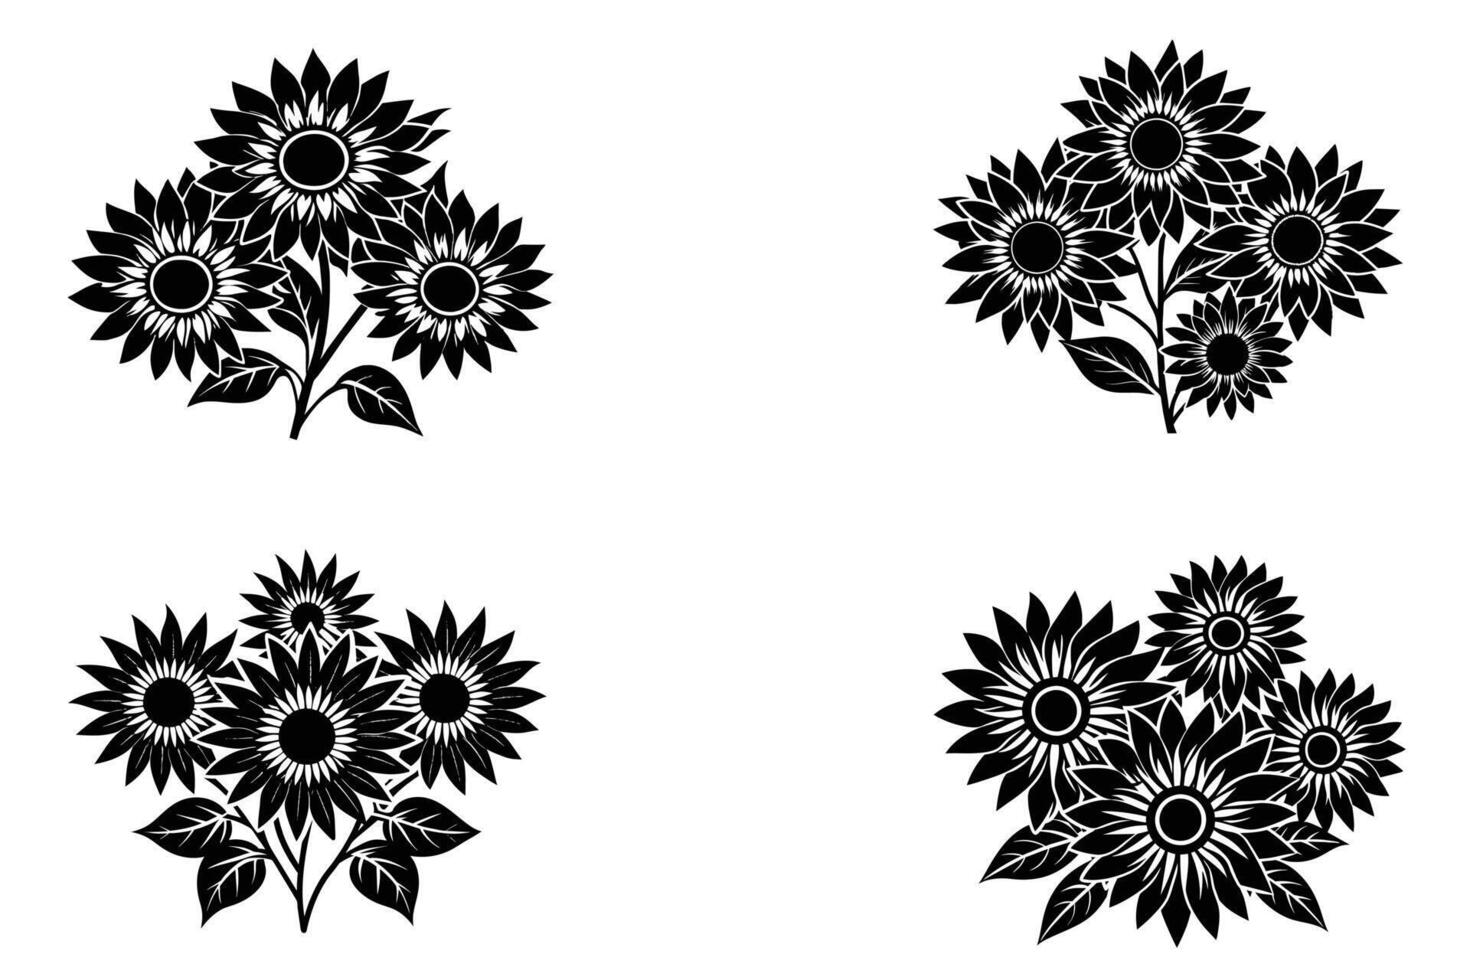 Sunflower Vector Design On White Background illustration